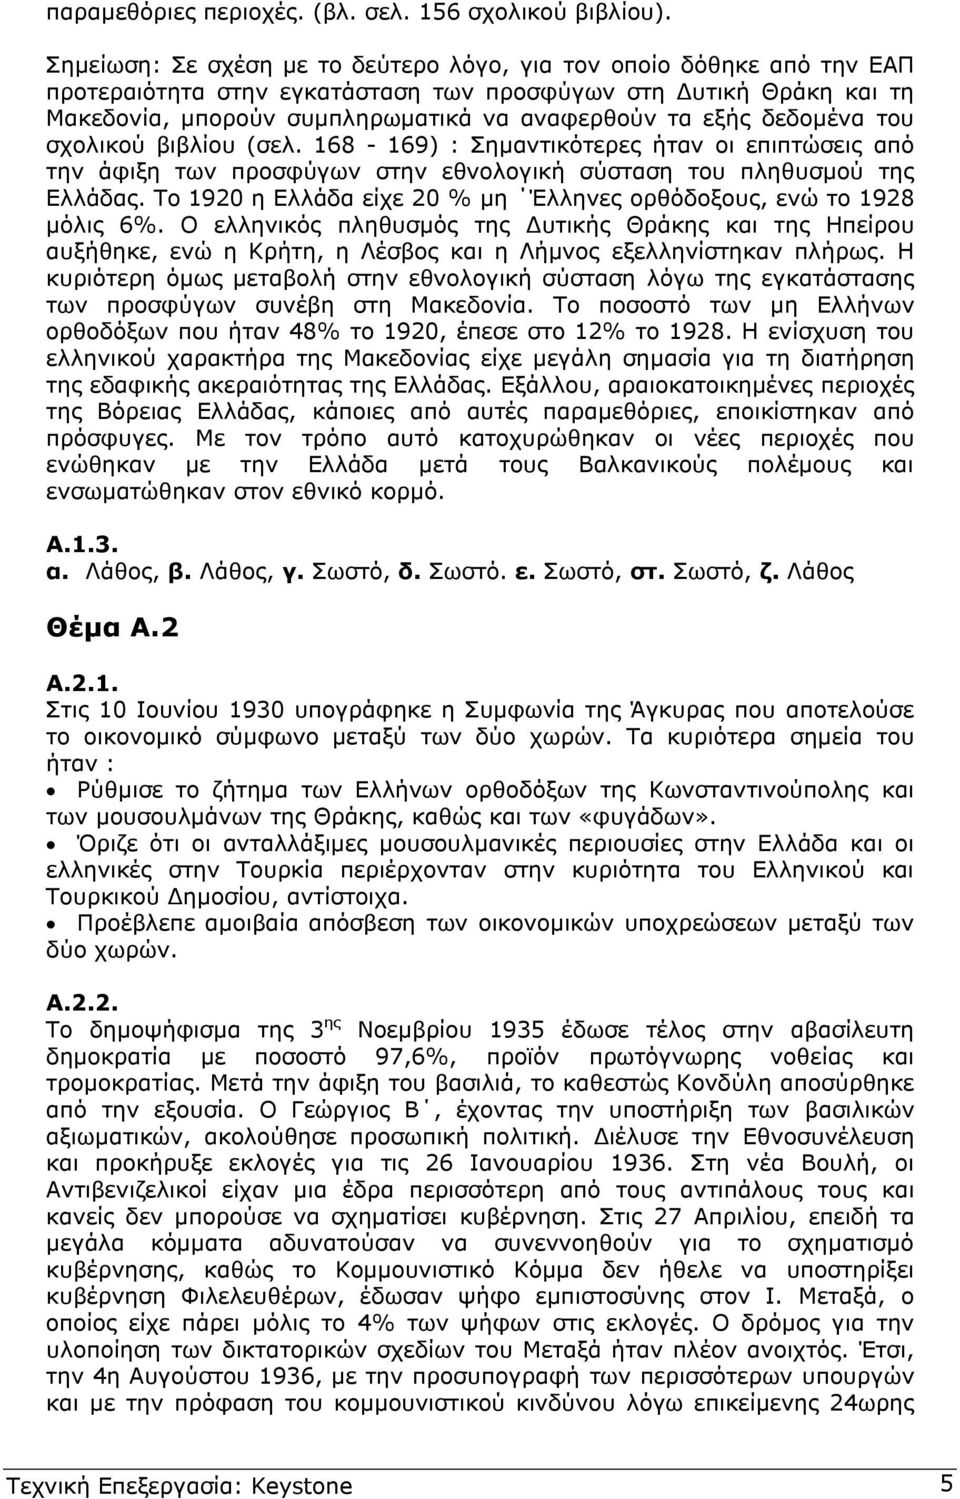 δεδοµένα του σχολικού βιβλίου (σελ. 168-169) : Σηµαντικότερες ήταν οι επιπτώσεις από την άφιξη των προσφύγων στην εθνολογική σύσταση του πληθυσµού της Ελλάδας.